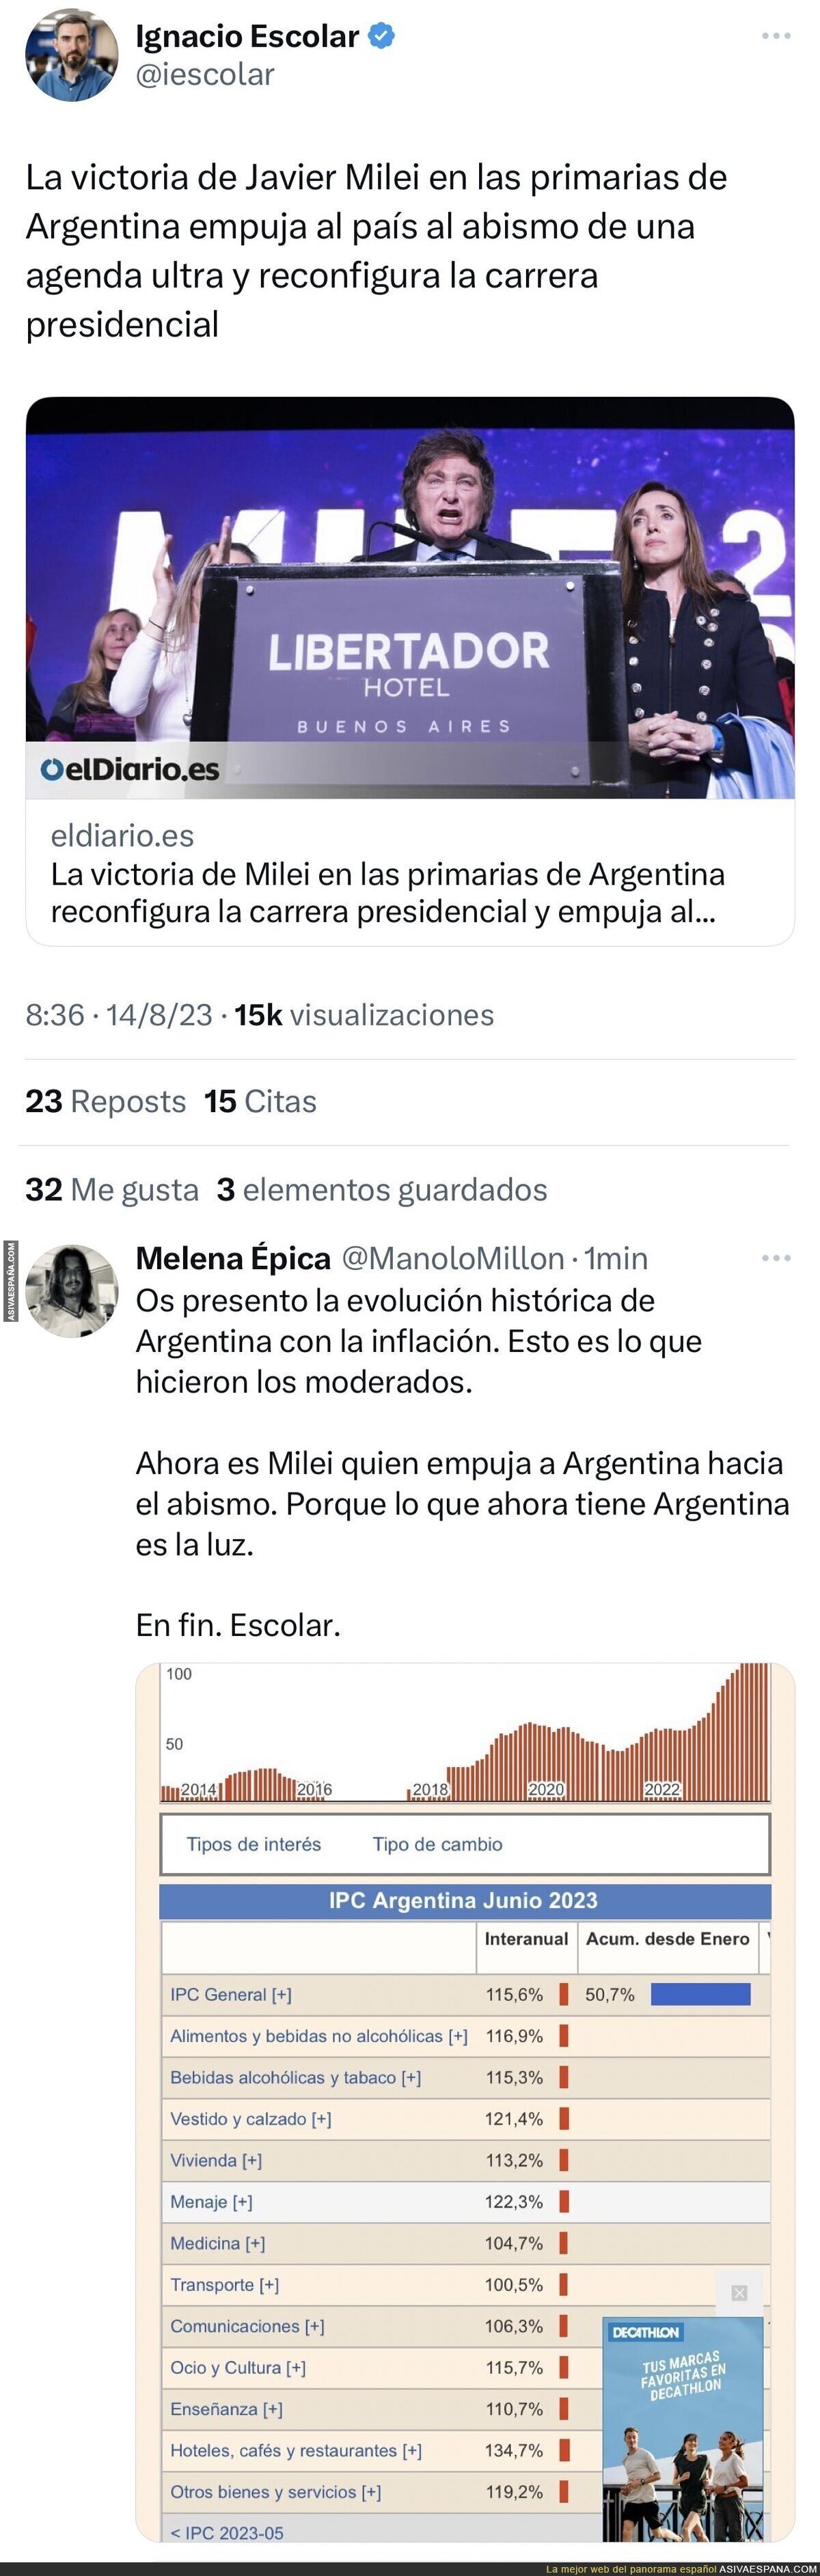 El futuro de Argentinas peligra según Escolar